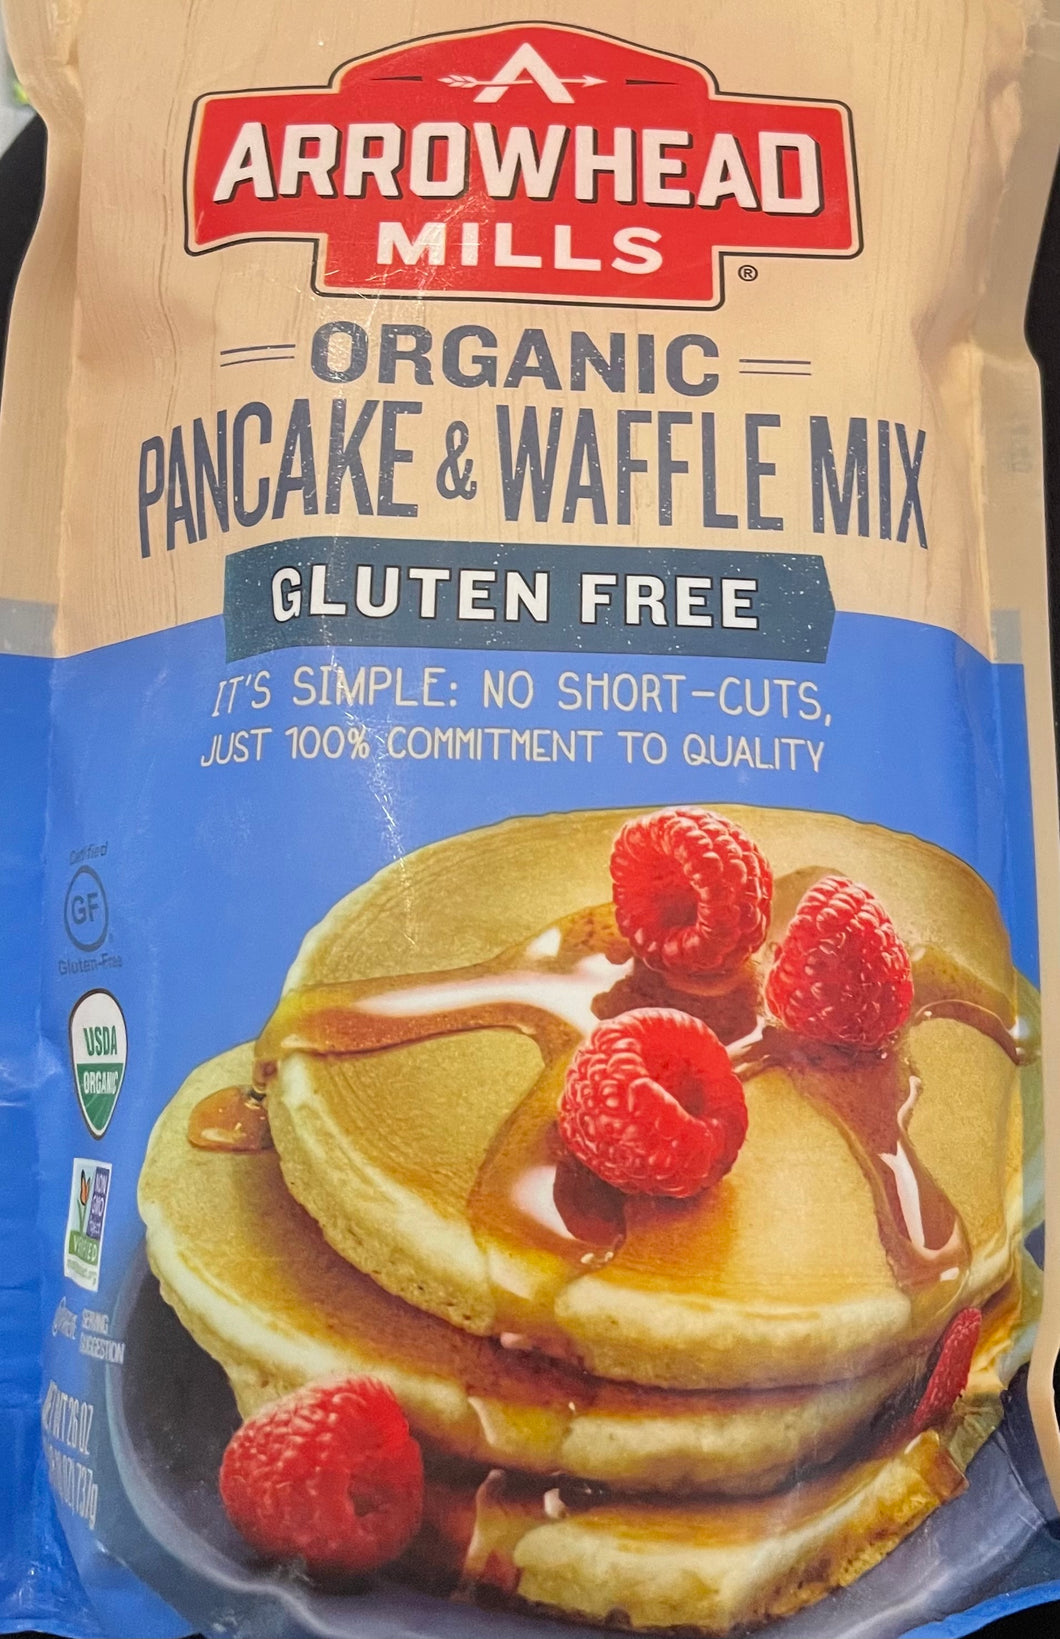 Pancake & Waffle Mix, Gluten Free, Arrowhead Mills, Organic